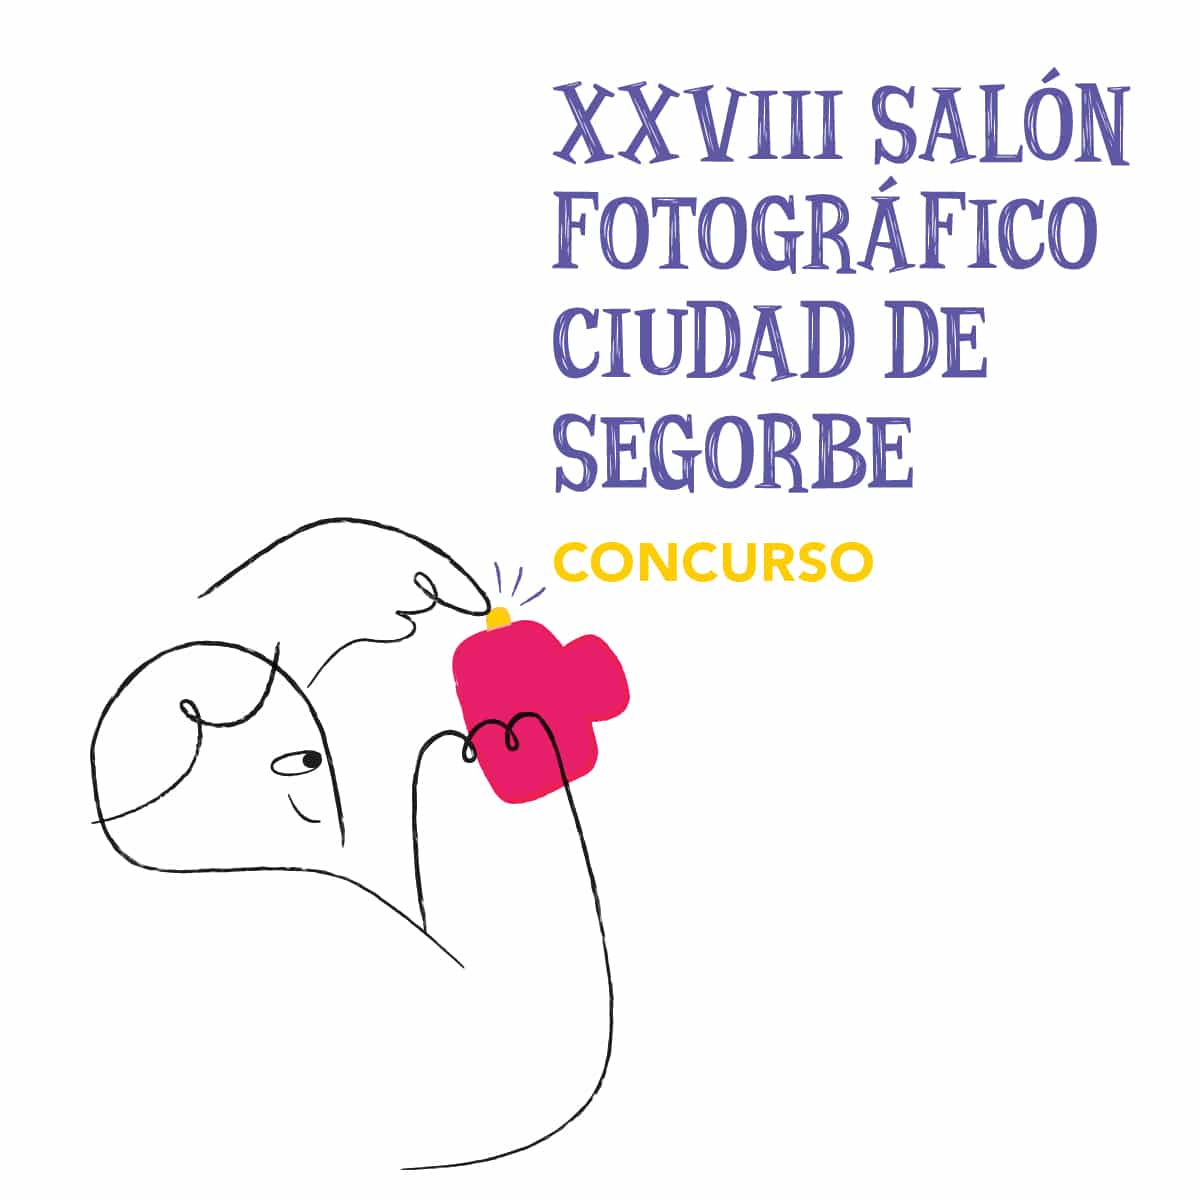 XXVIII Salón Fotográfico Ciudad de Segorbe